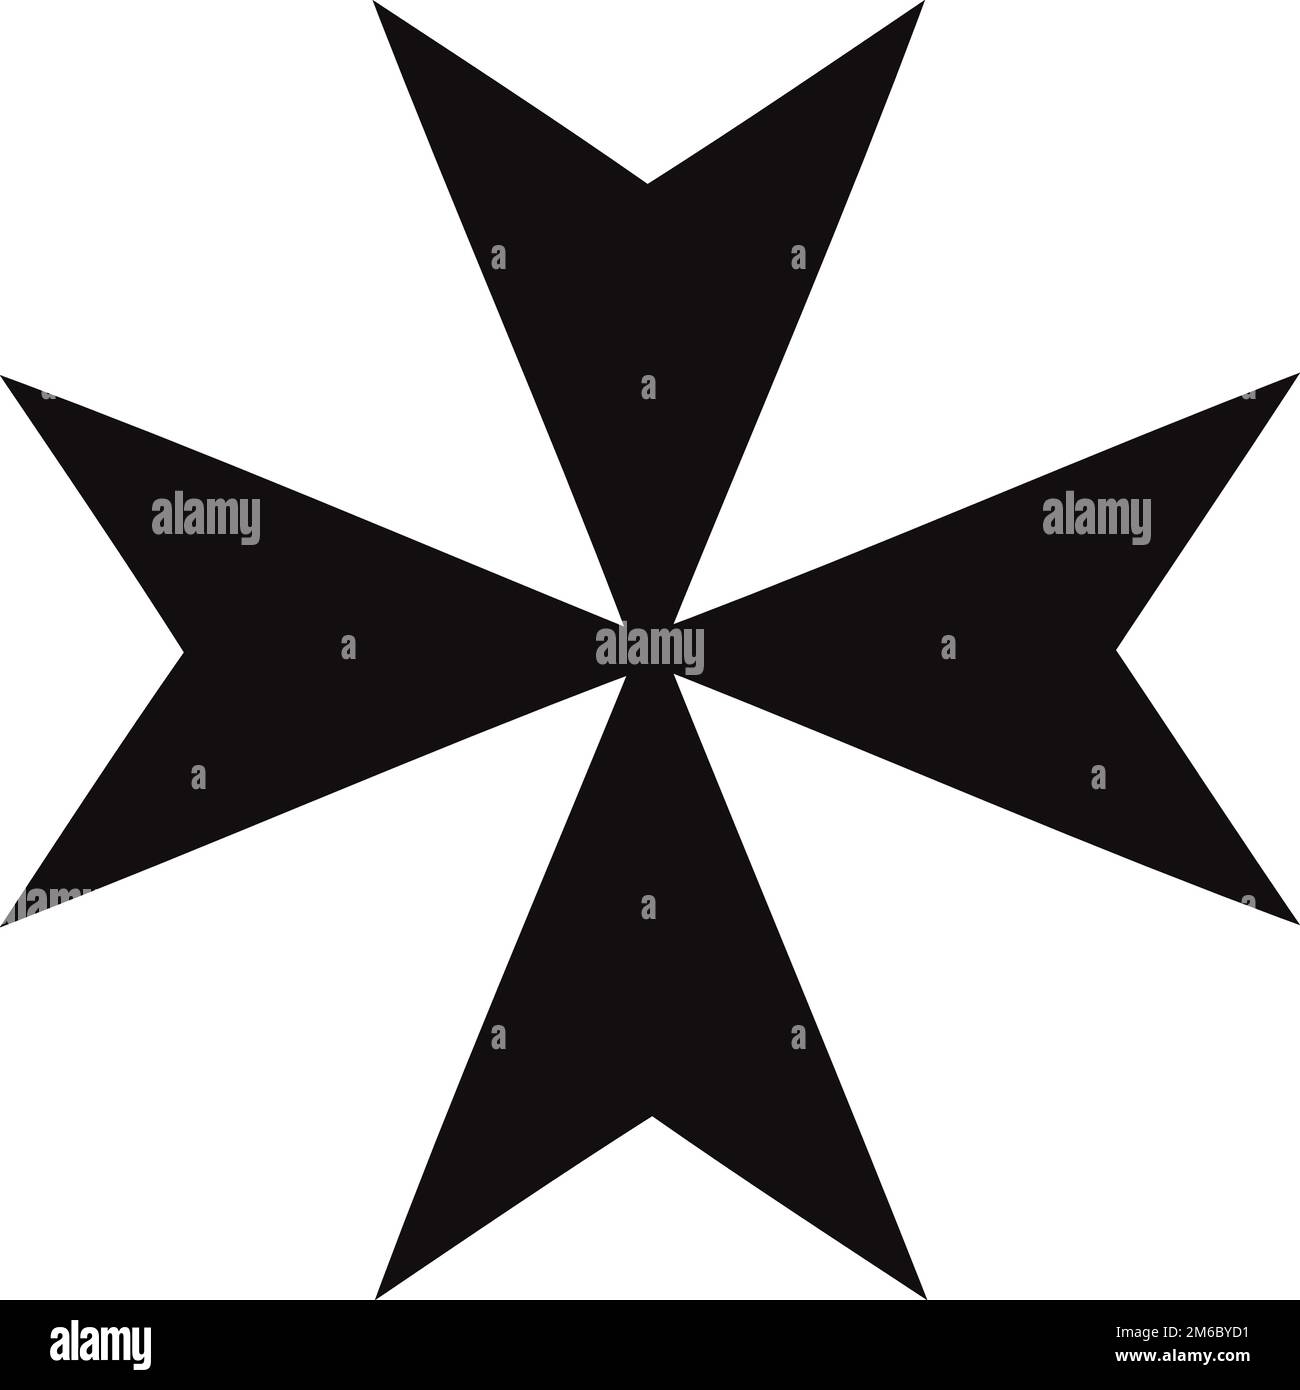 Maltese cross vector illustration, cross silhouette Stock Vector